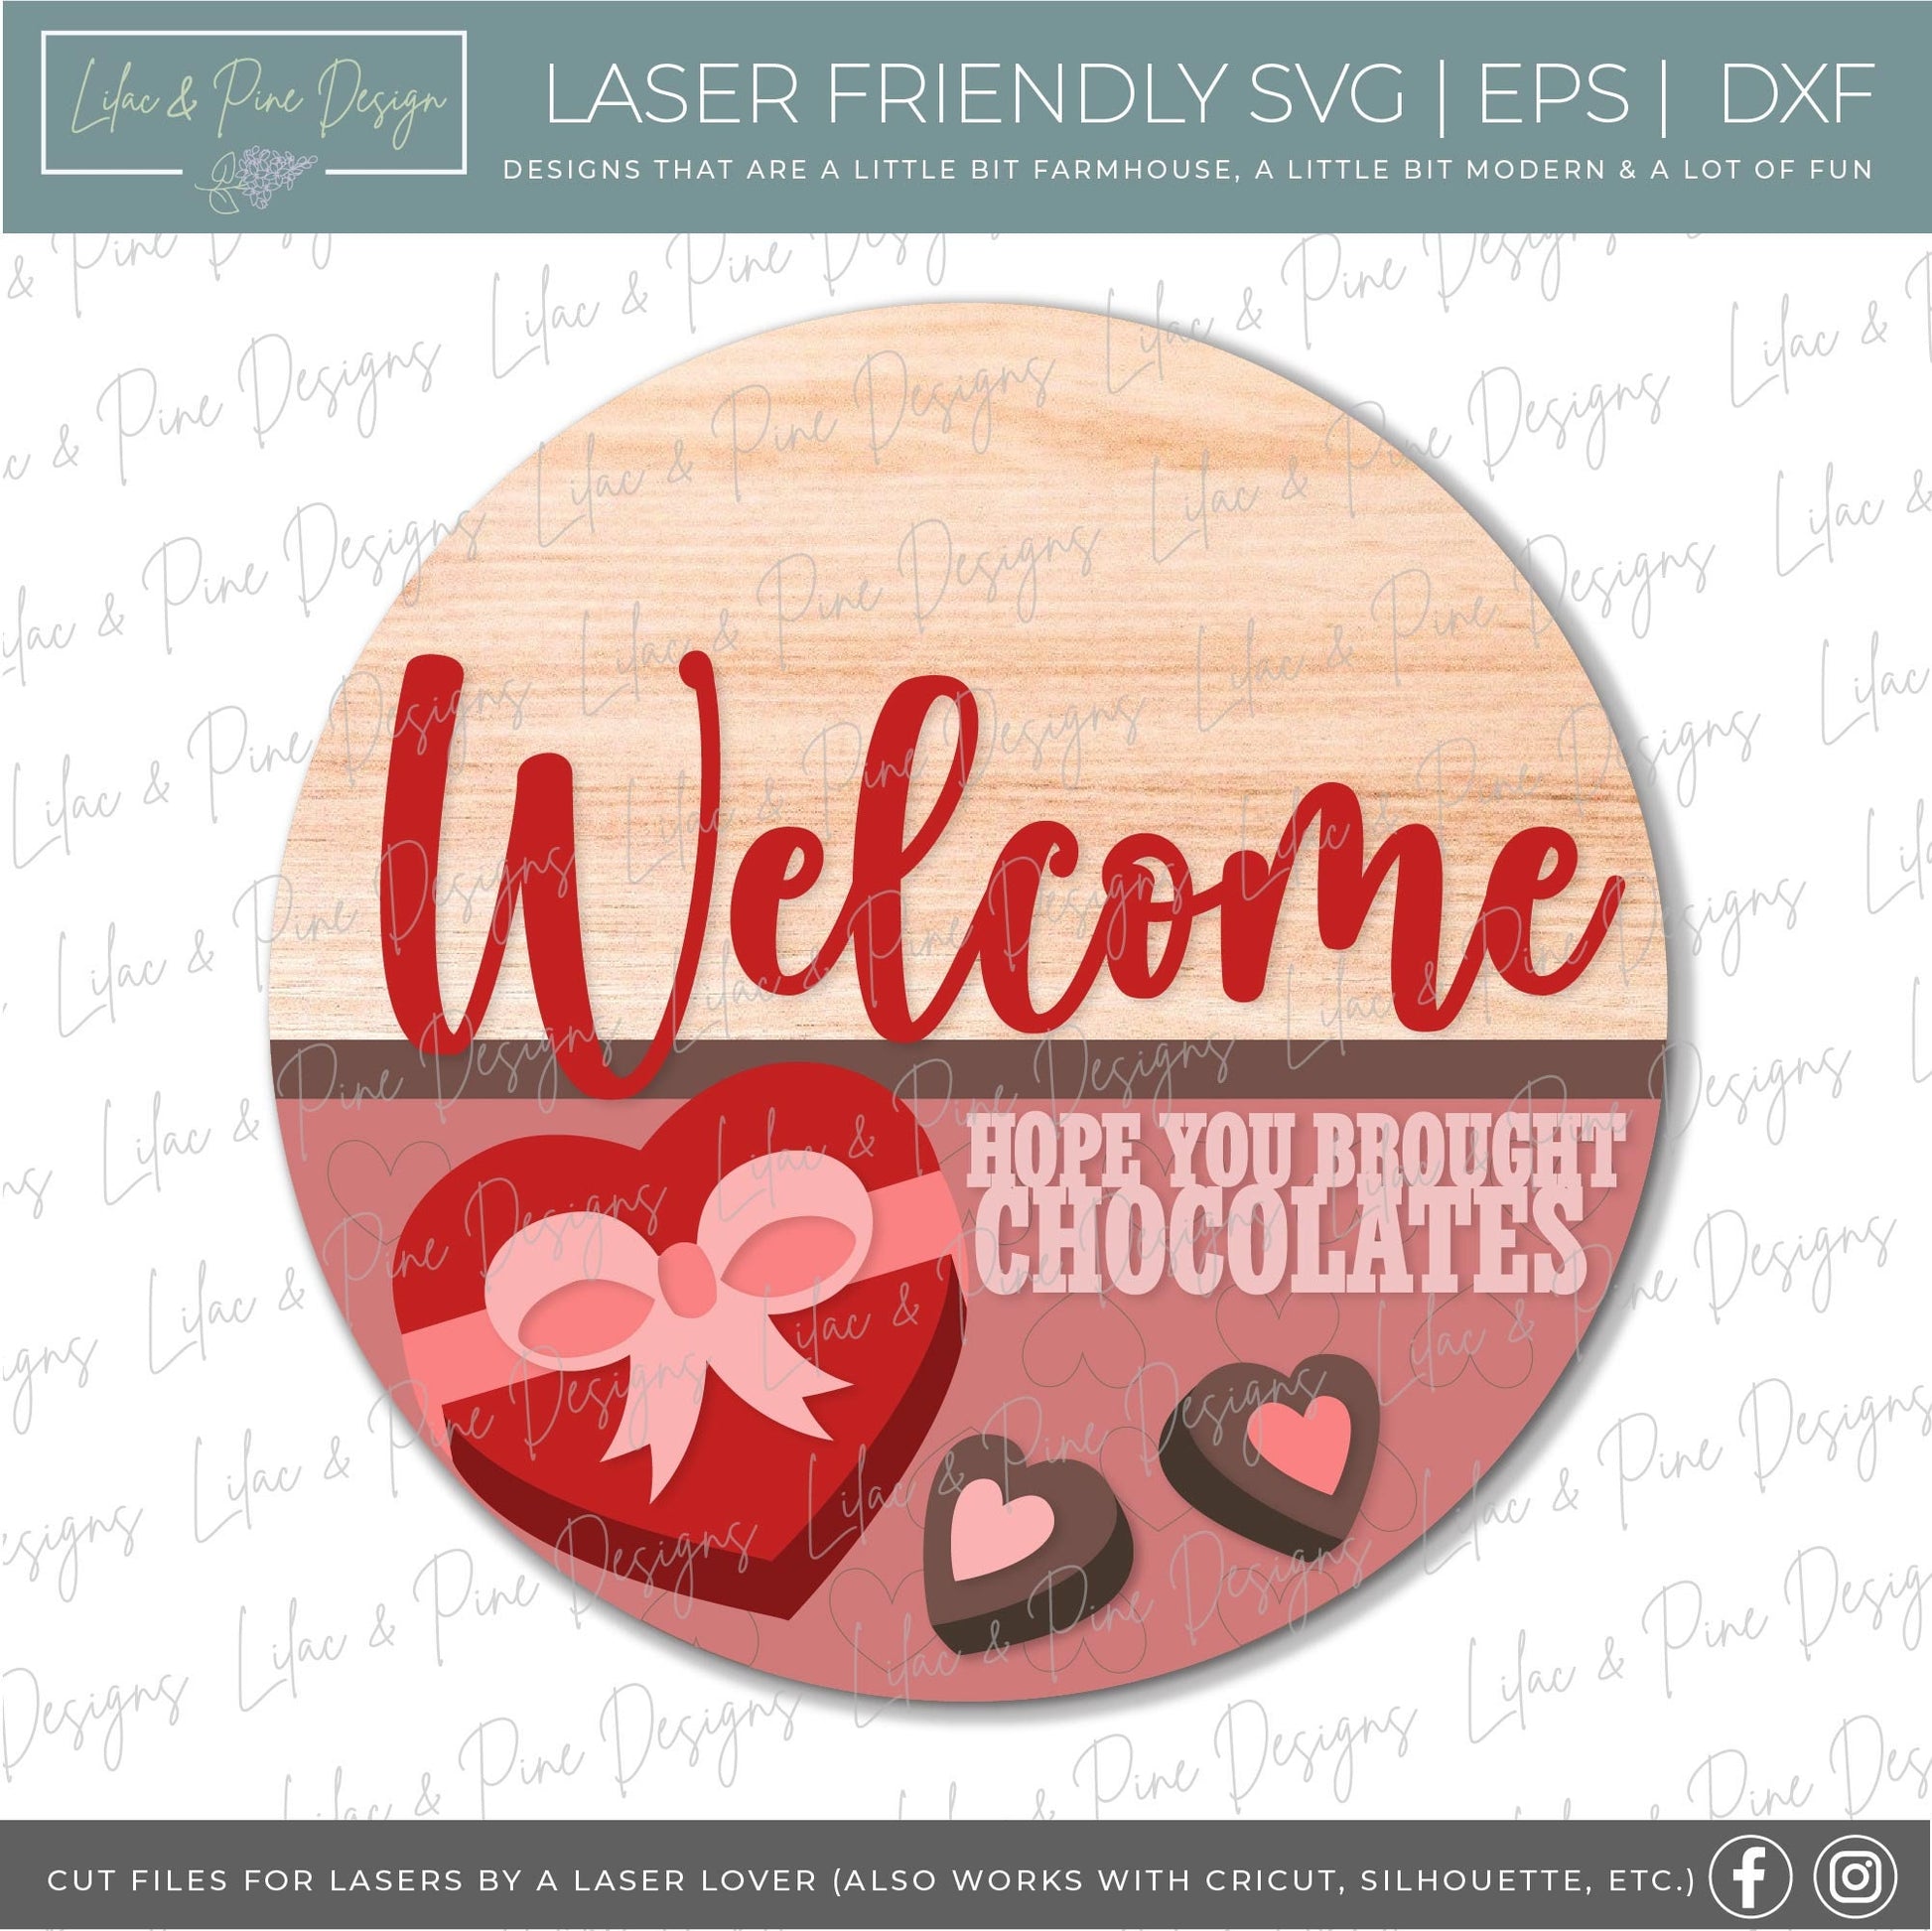 Valentine Chocolates Welcome sign SVG, Valentine's Day round door hanger svg, Valentines Day porch decor, Glowforge SVG, laser cut file